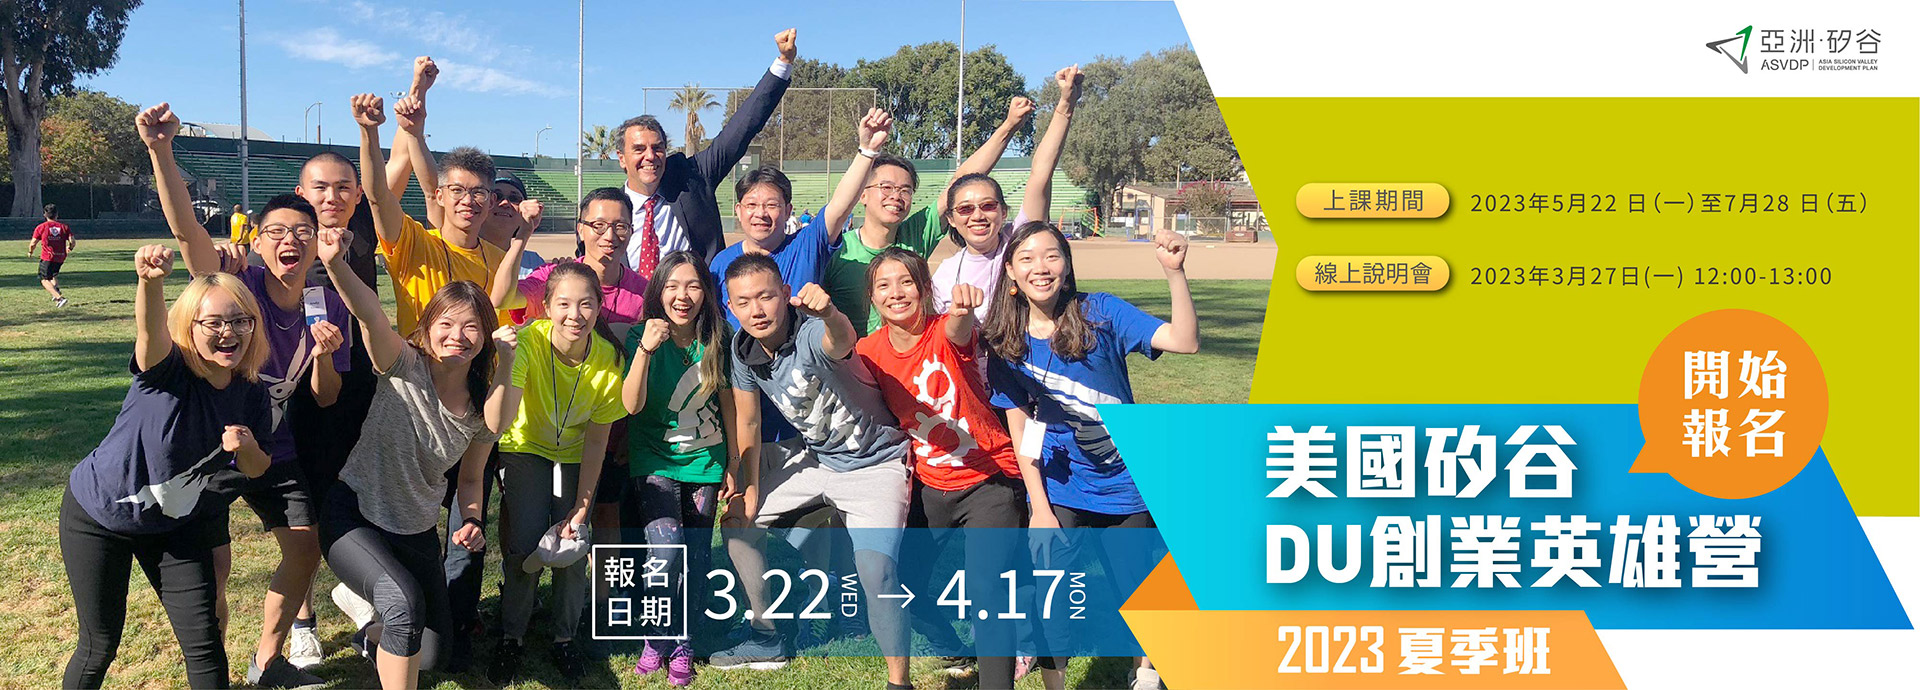 亞洲·矽谷「2023 DU創業英雄營夏季班」甄選啟動